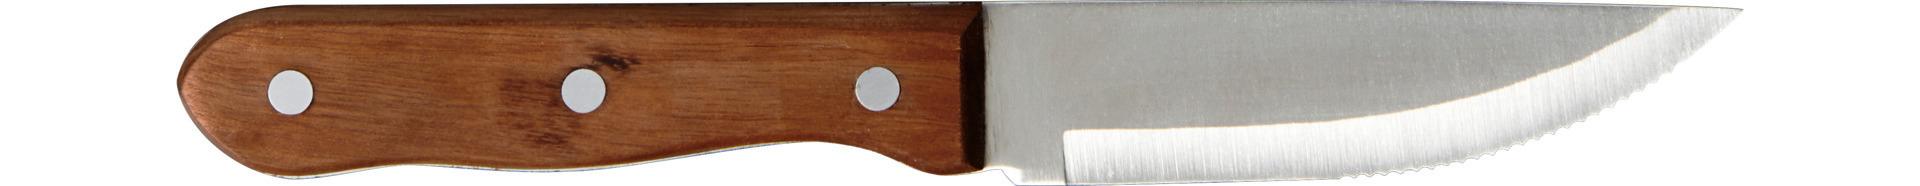 Steakmesser mit Holzgriff Steelite # 5794WP057